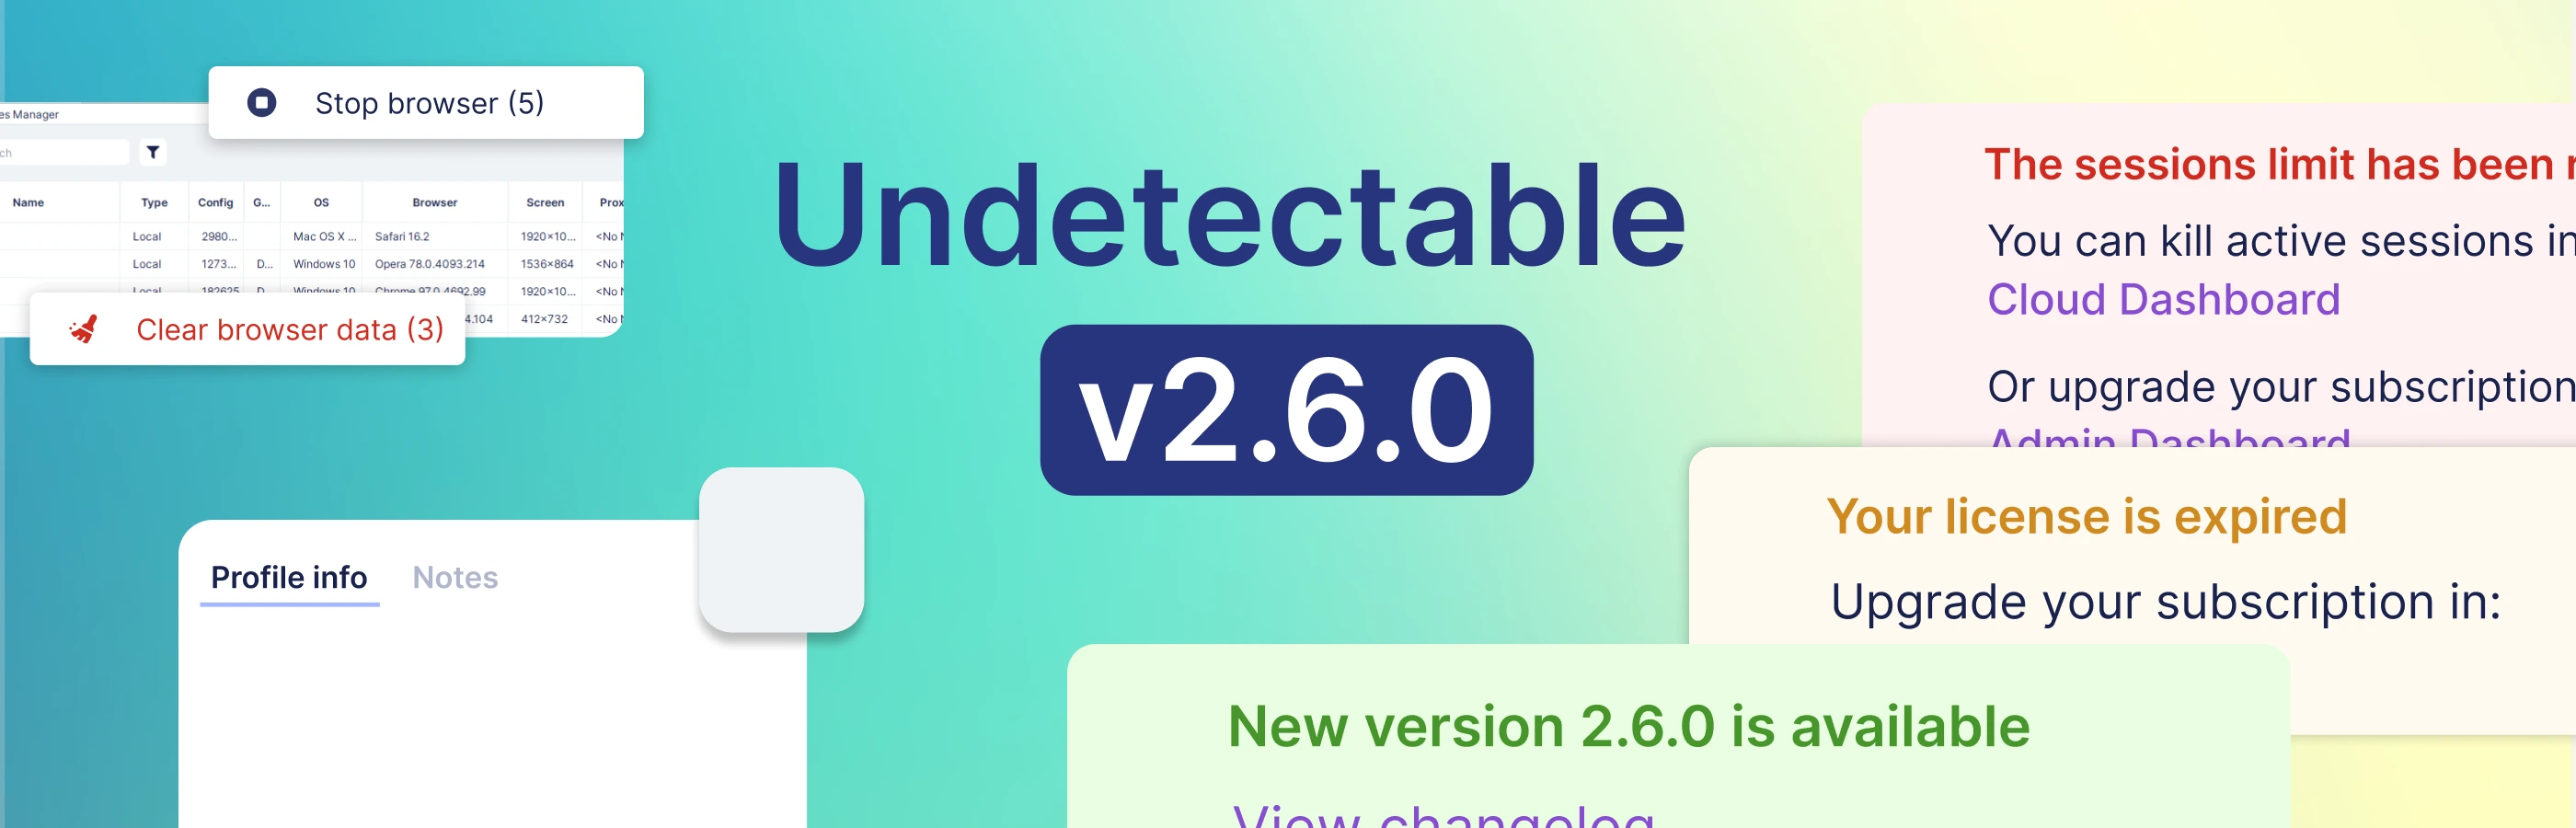 Aktualisierung v2.6.0 Cookies-Bot auf Chromium und neues Interface